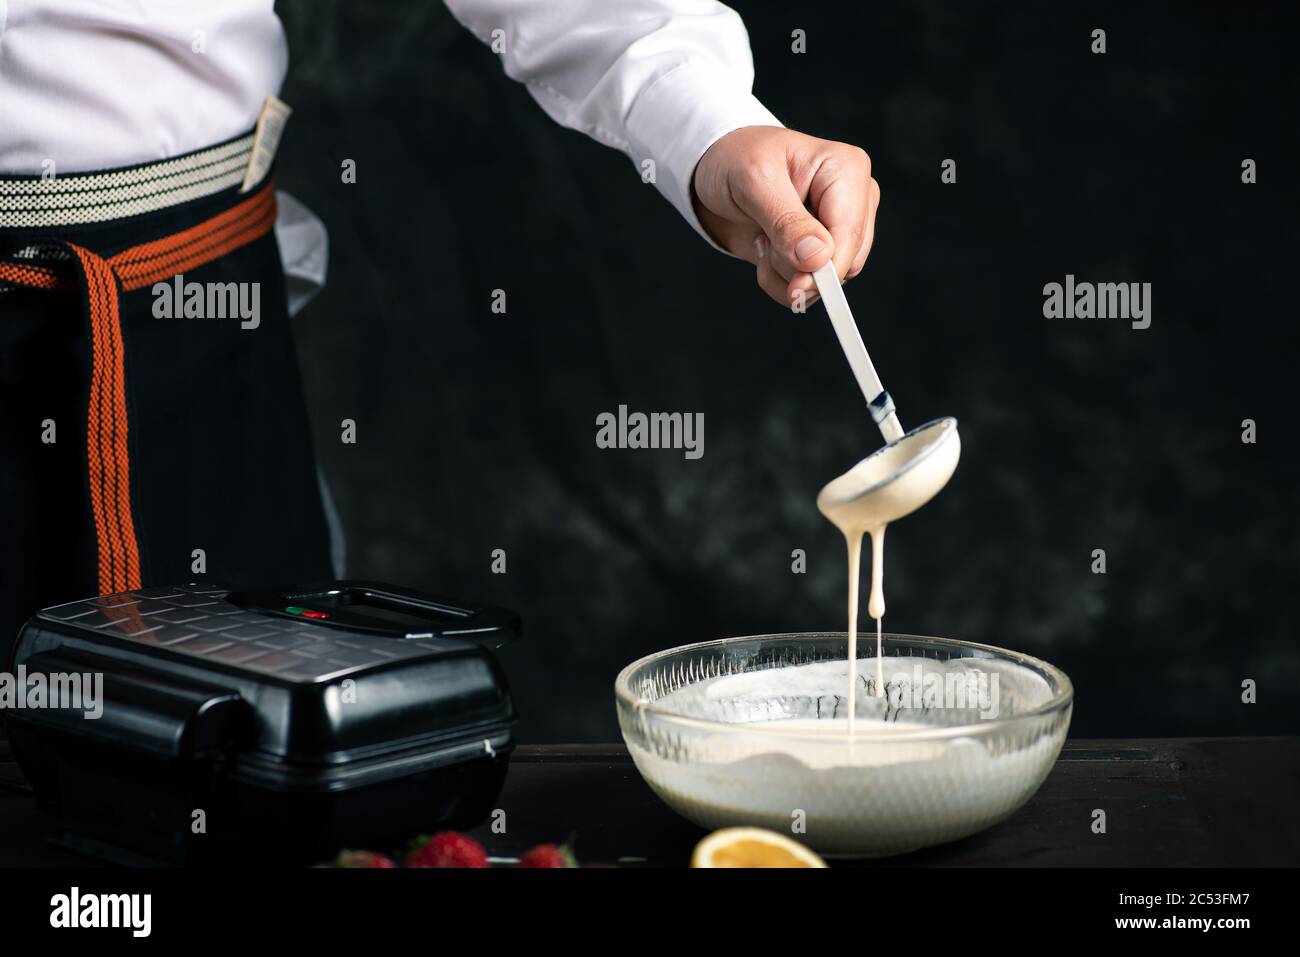 Mélanger la pâte à gaufre Chef dans un bol close up Banque D'Images